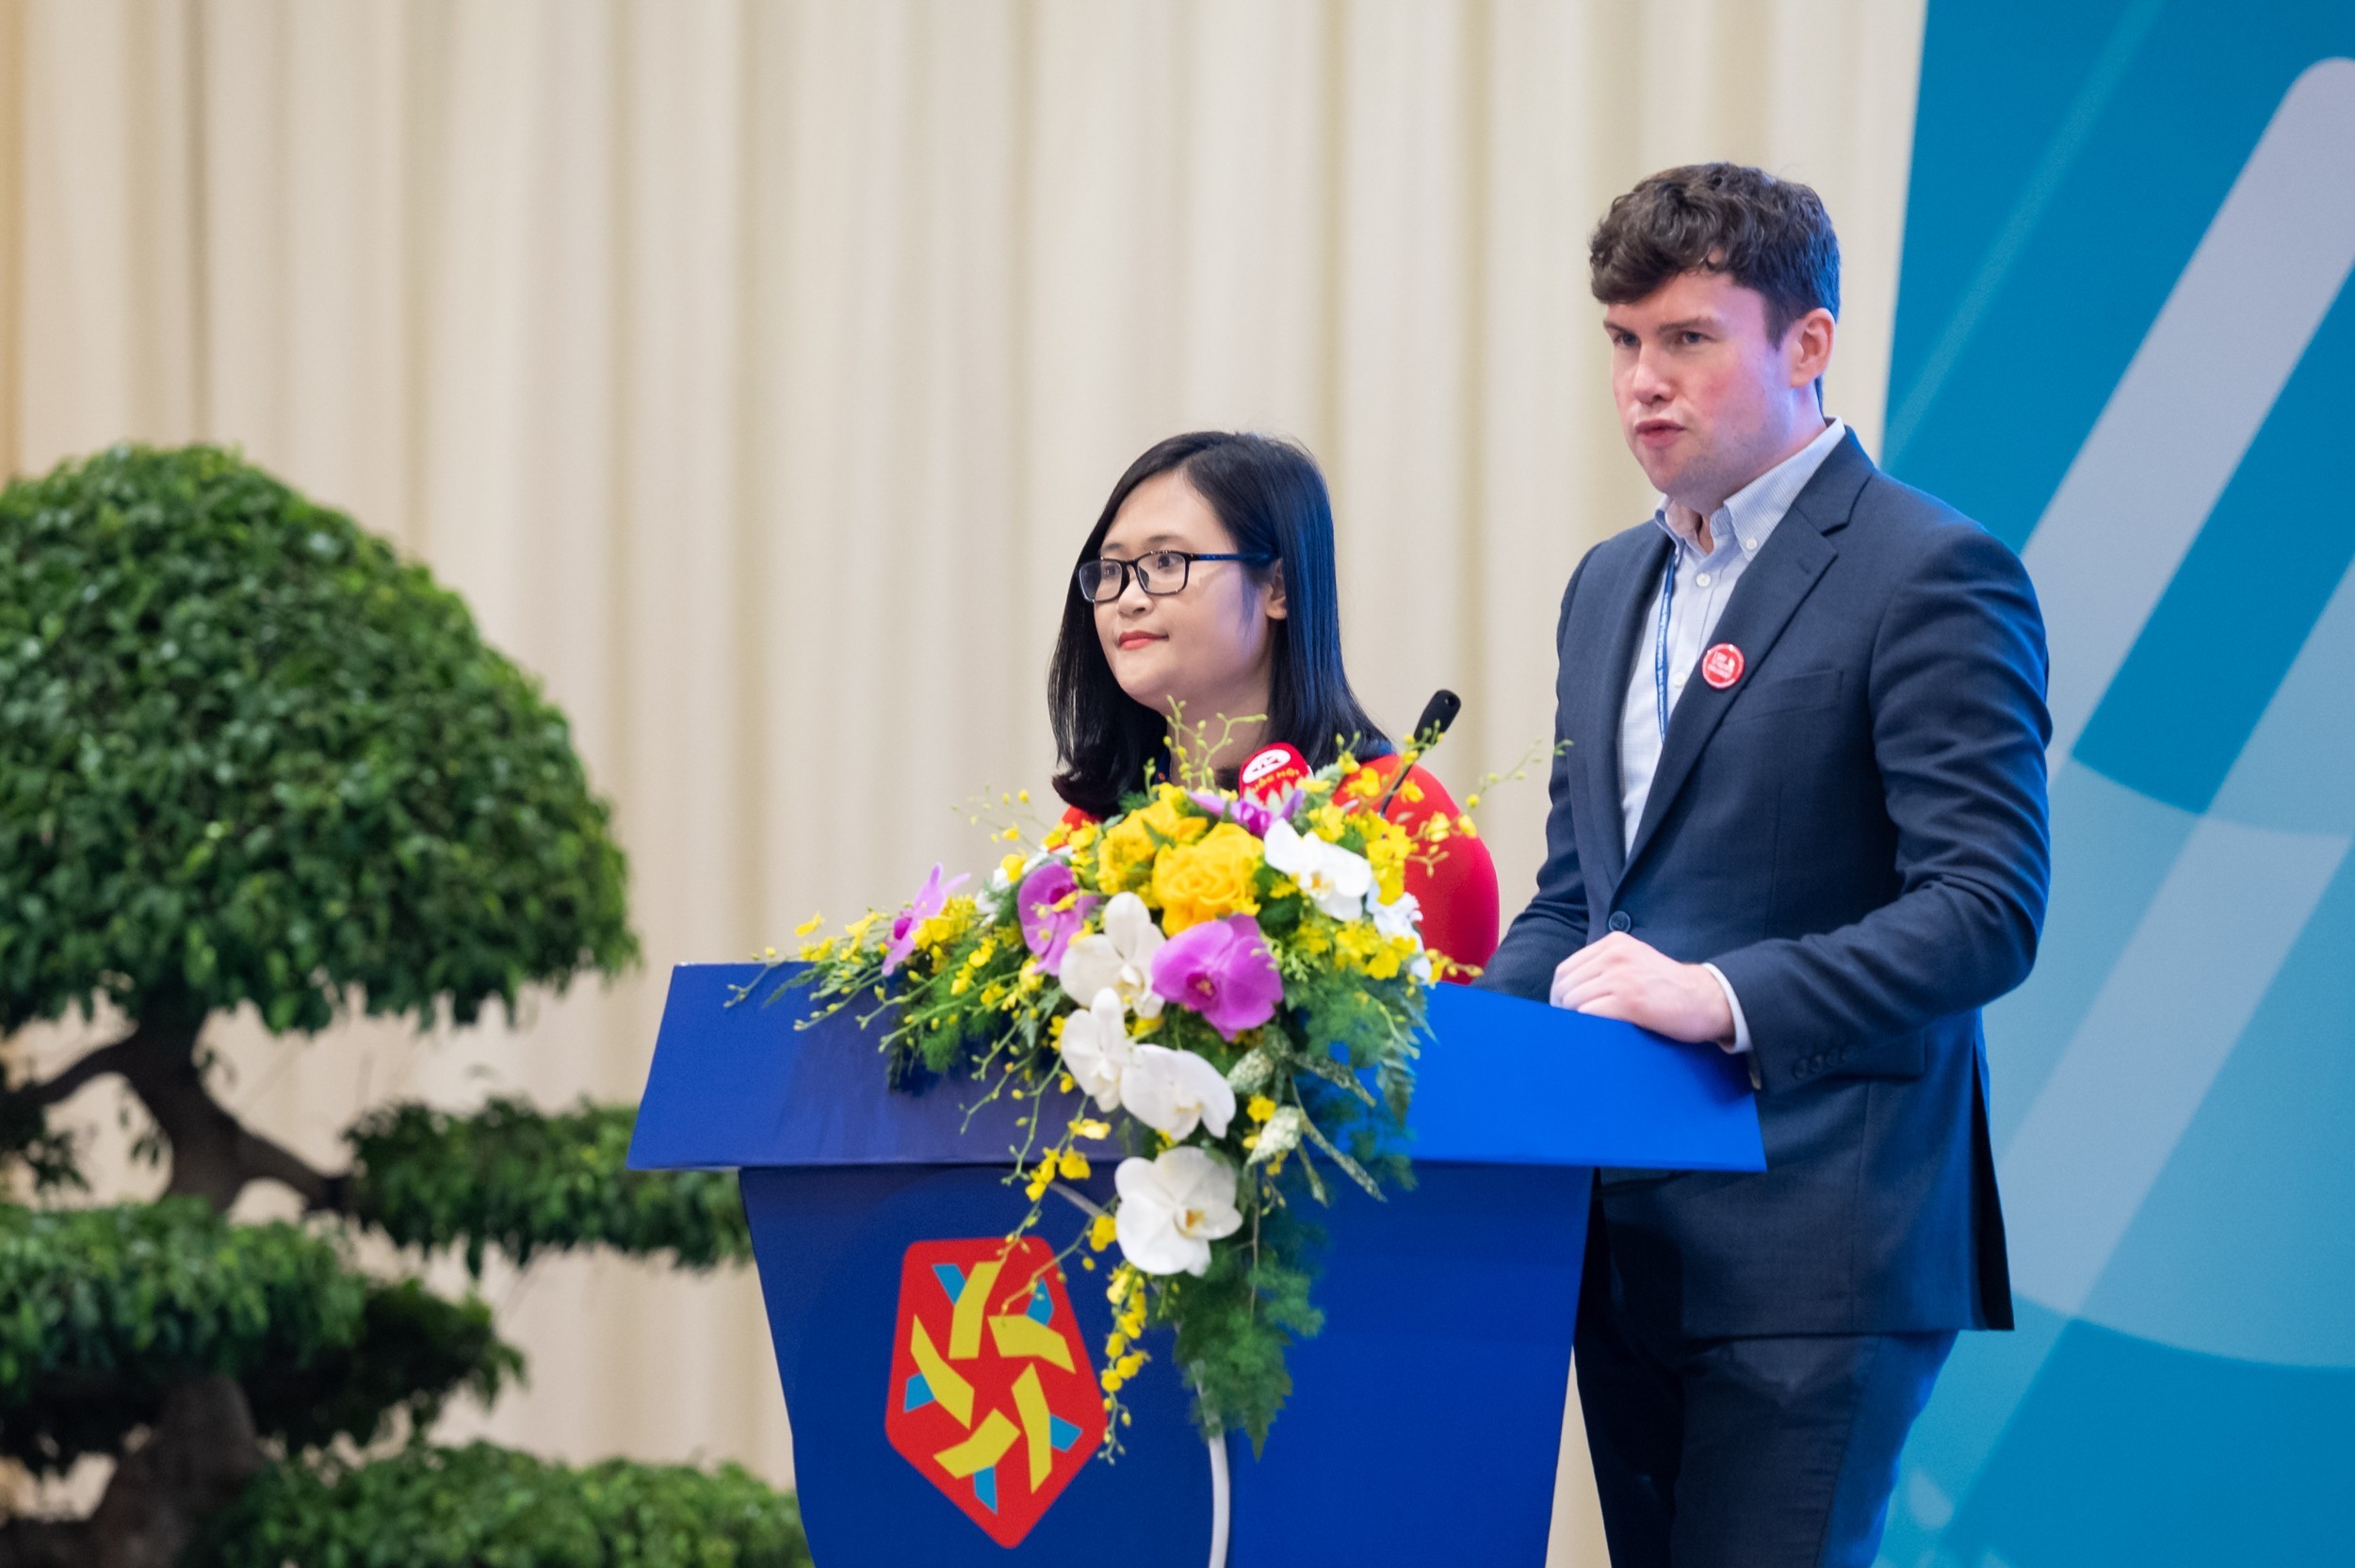 Dan Carden, Chủ tịch Diễn đàn Nghị sĩ trẻ; Bà Hà Ánh Phượng, Đại biểu Quốc hội Việt Nam  trình bày dự thảo Tuyên bố của Hội nghị. (Ảnh: Quochoi.vn)